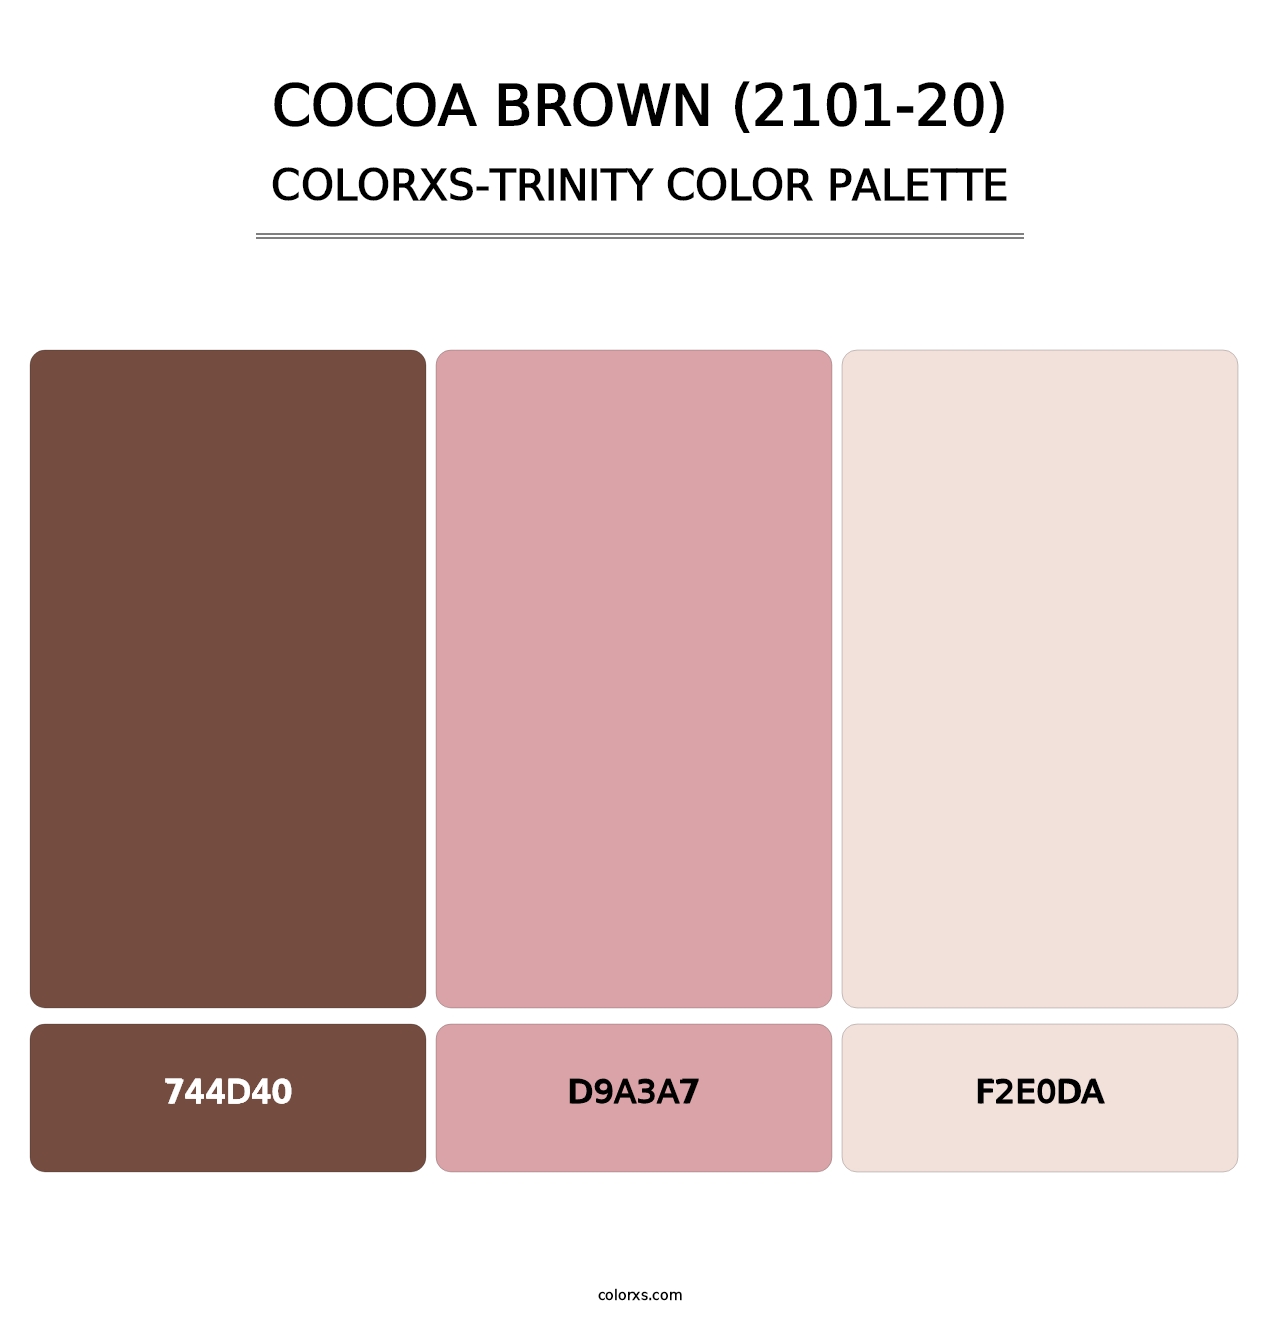 Cocoa Brown (2101-20) - Colorxs Trinity Palette